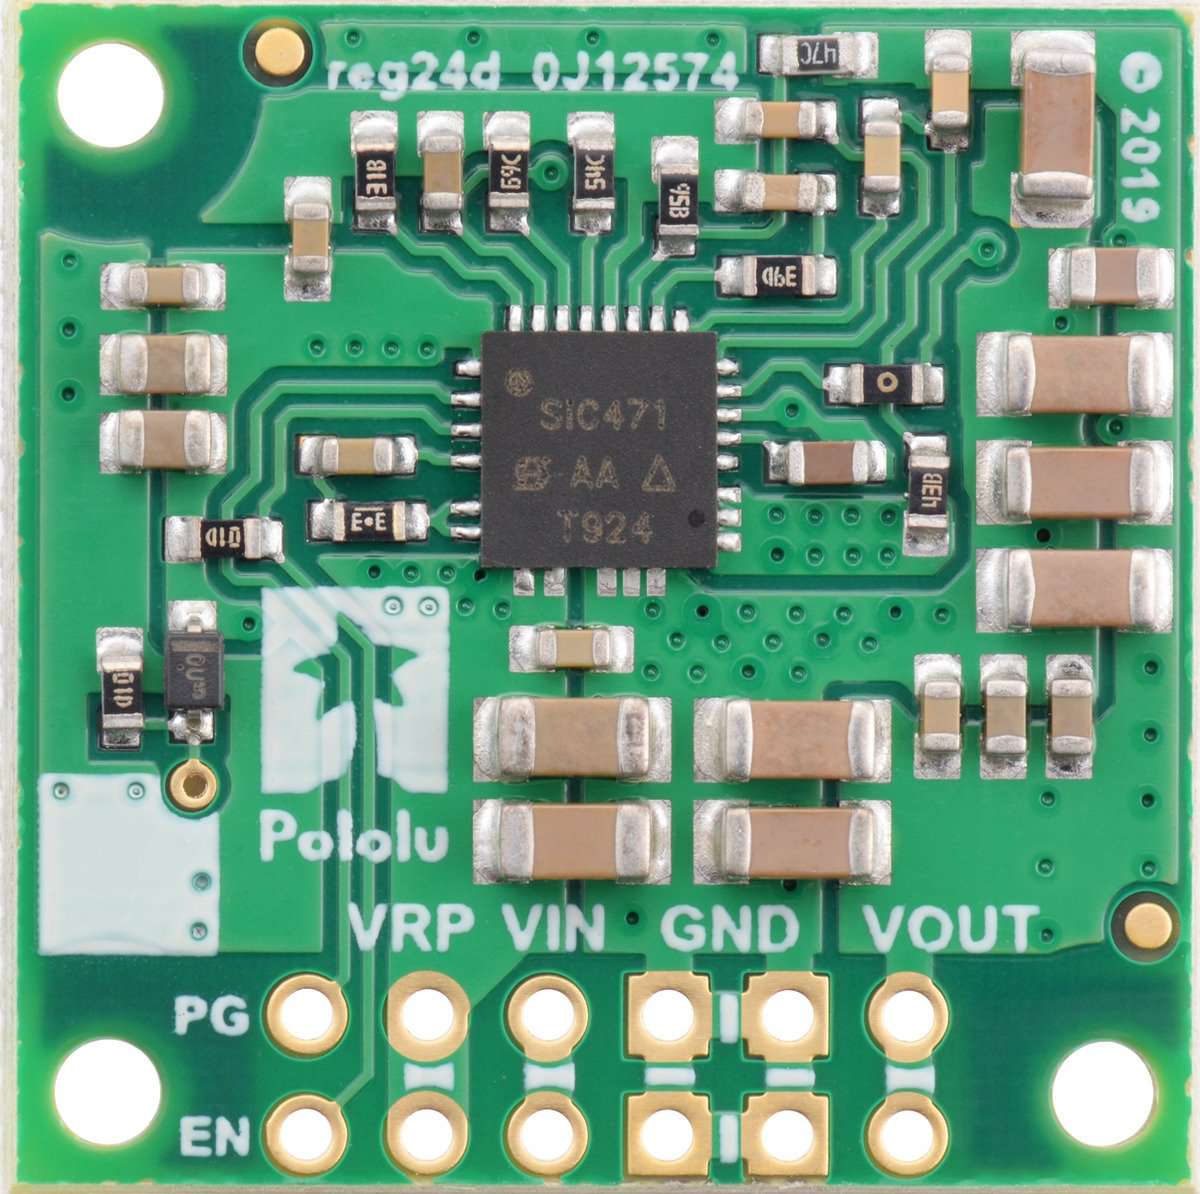 12V, 4.5A Step-Down Voltage Regulator D36V50F12